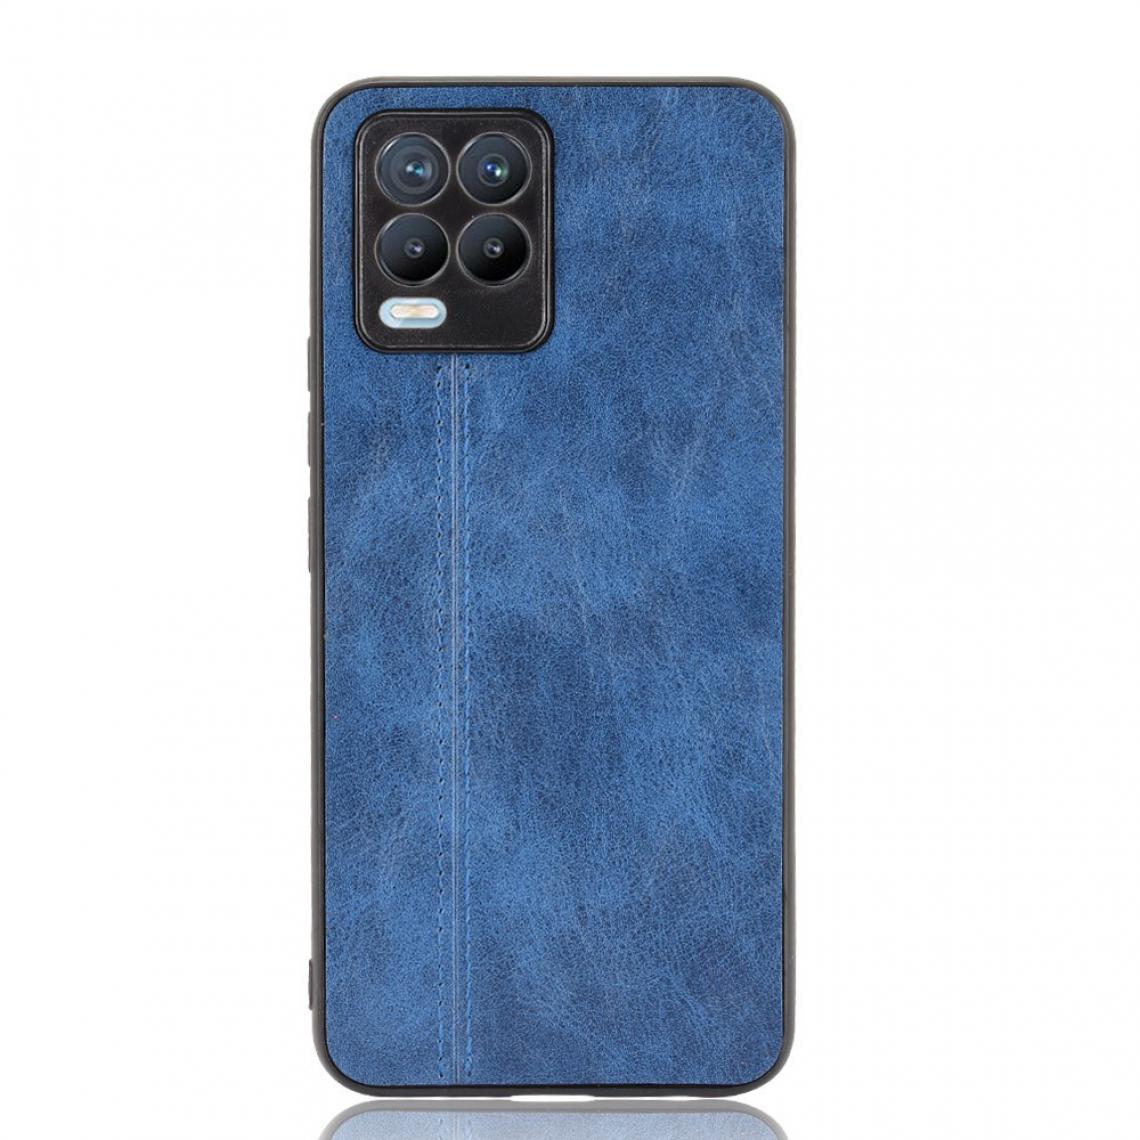 Other - Coque en TPU + PU Conception de ligne de couture bleu pour votre Realme 8/8 Pro 4G - Coque, étui smartphone